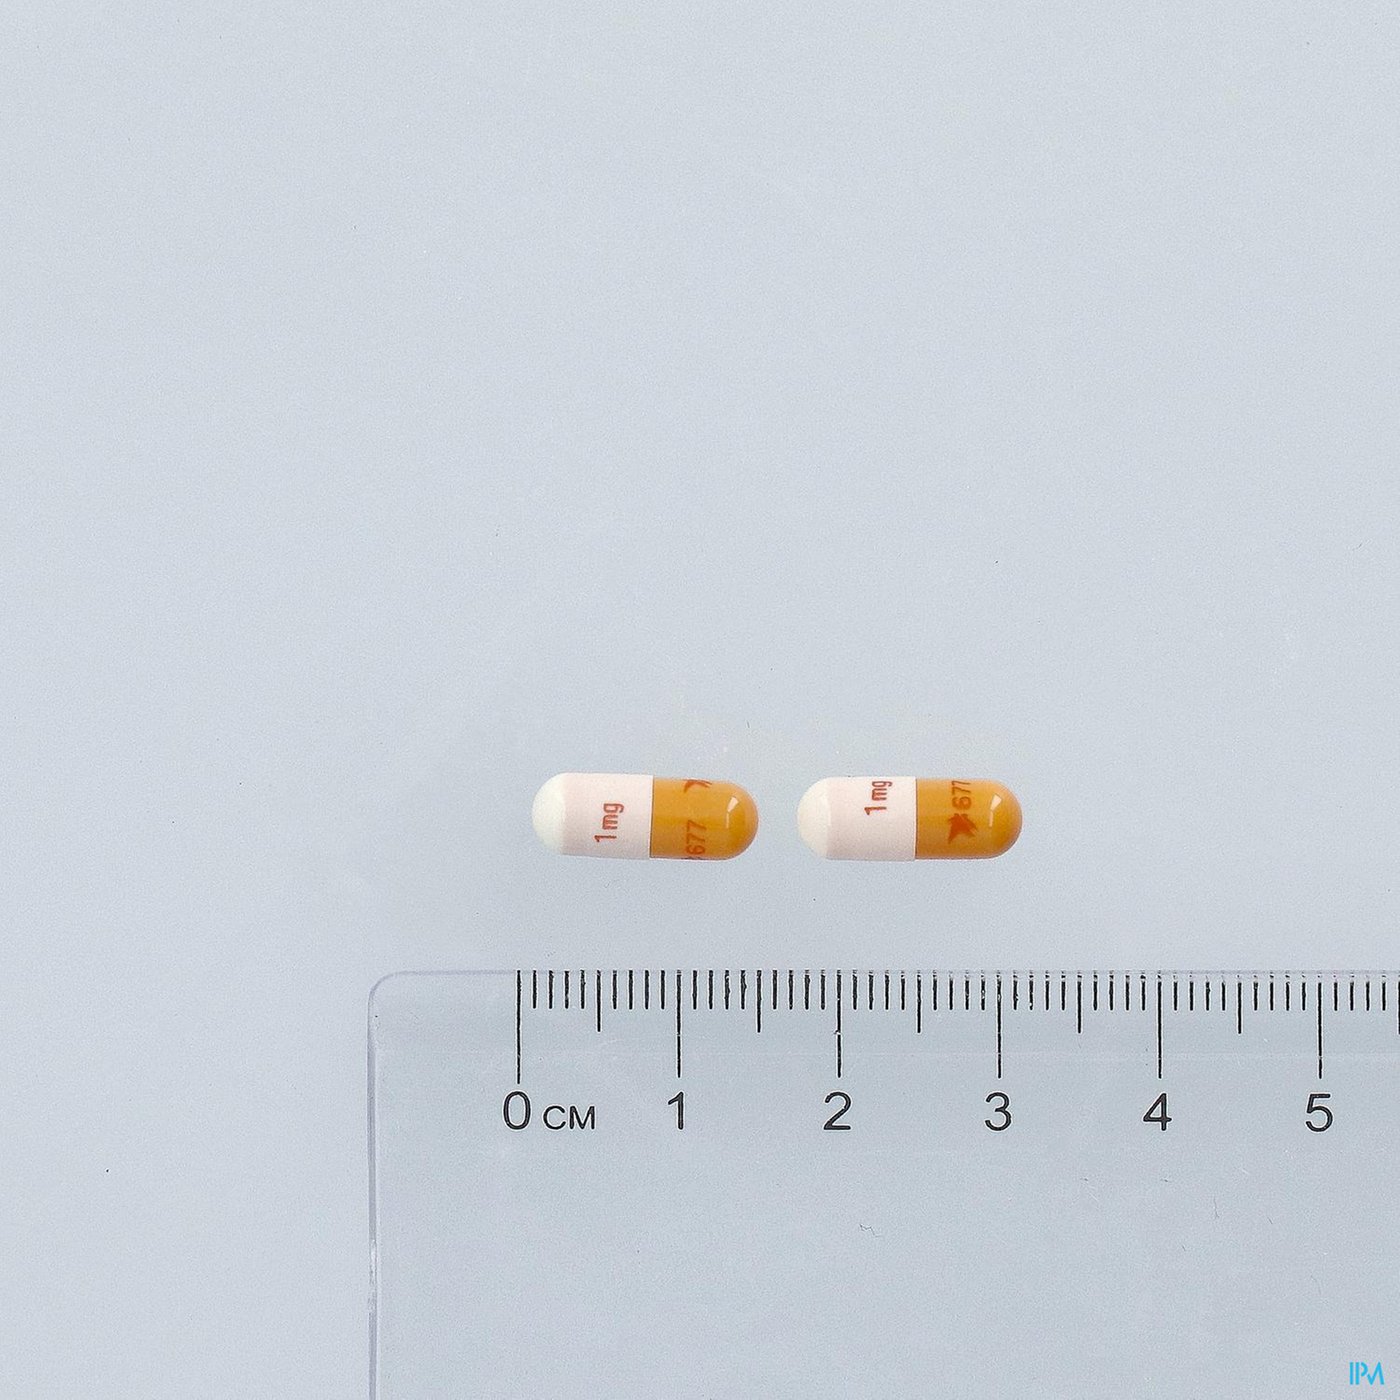 Advagraf Caps 100 X 1mg pillshot